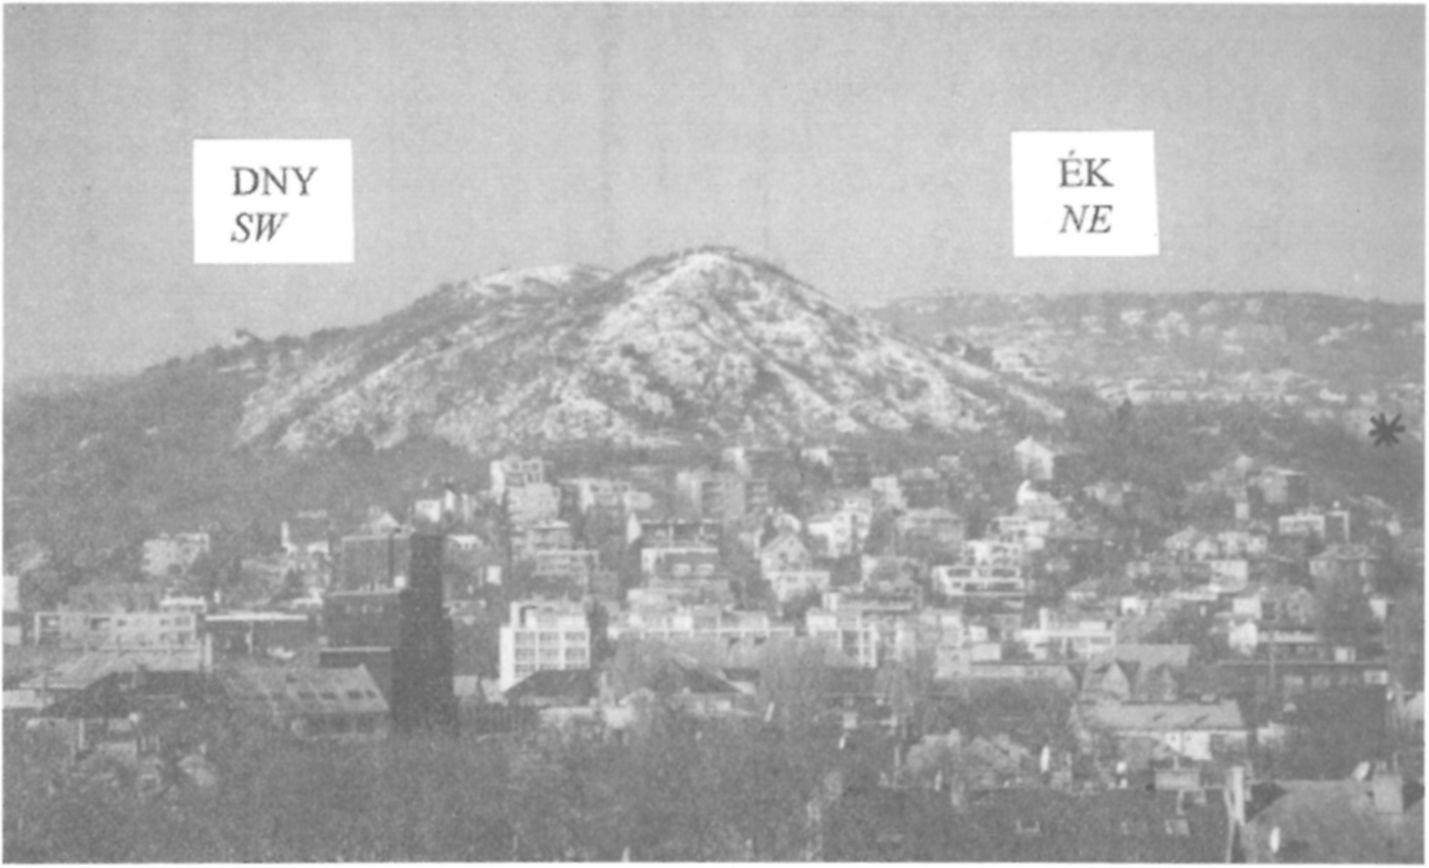 FODOR L. & MACYARI A.: Késő-eocén-miocén szerkezetalakulás és üledékképződés a Sas-hegyen 251 3. ábra. A Sas-hegy látképe keletről (a Flamenco szálloda ablakából).